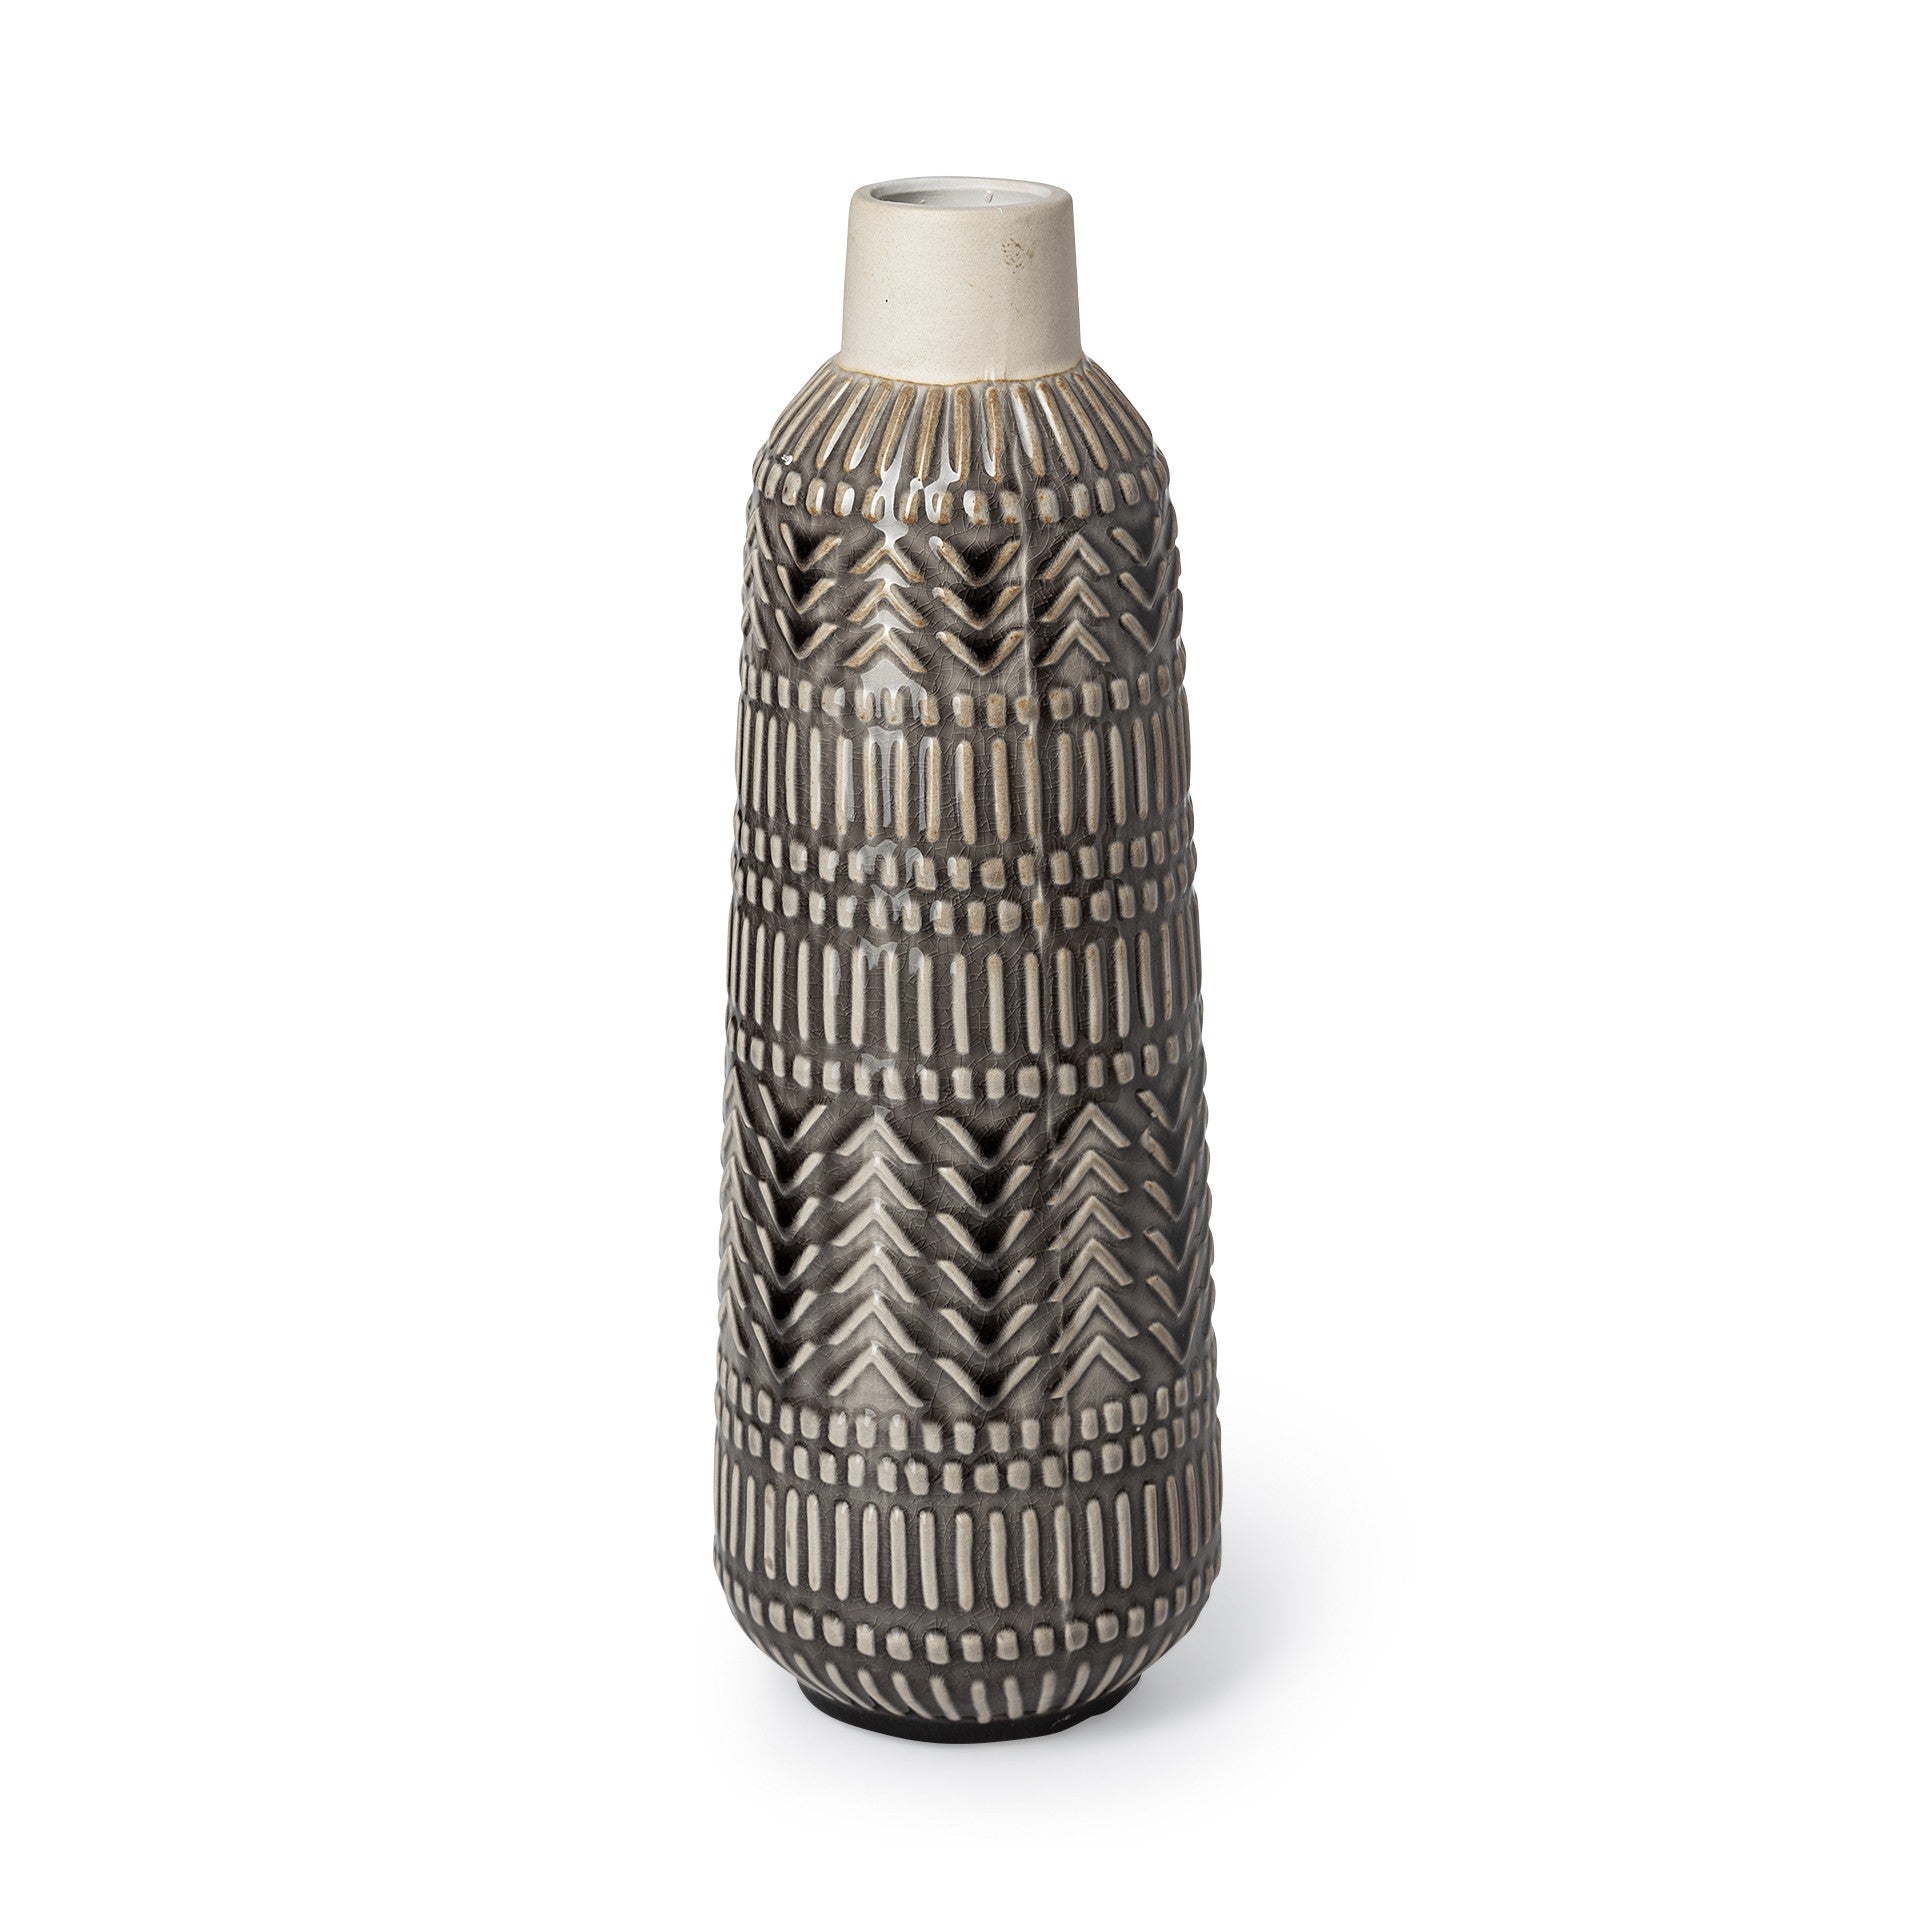 14" Black and Cream Organic Glaze Chevron Embossed Ceramic Vase-0